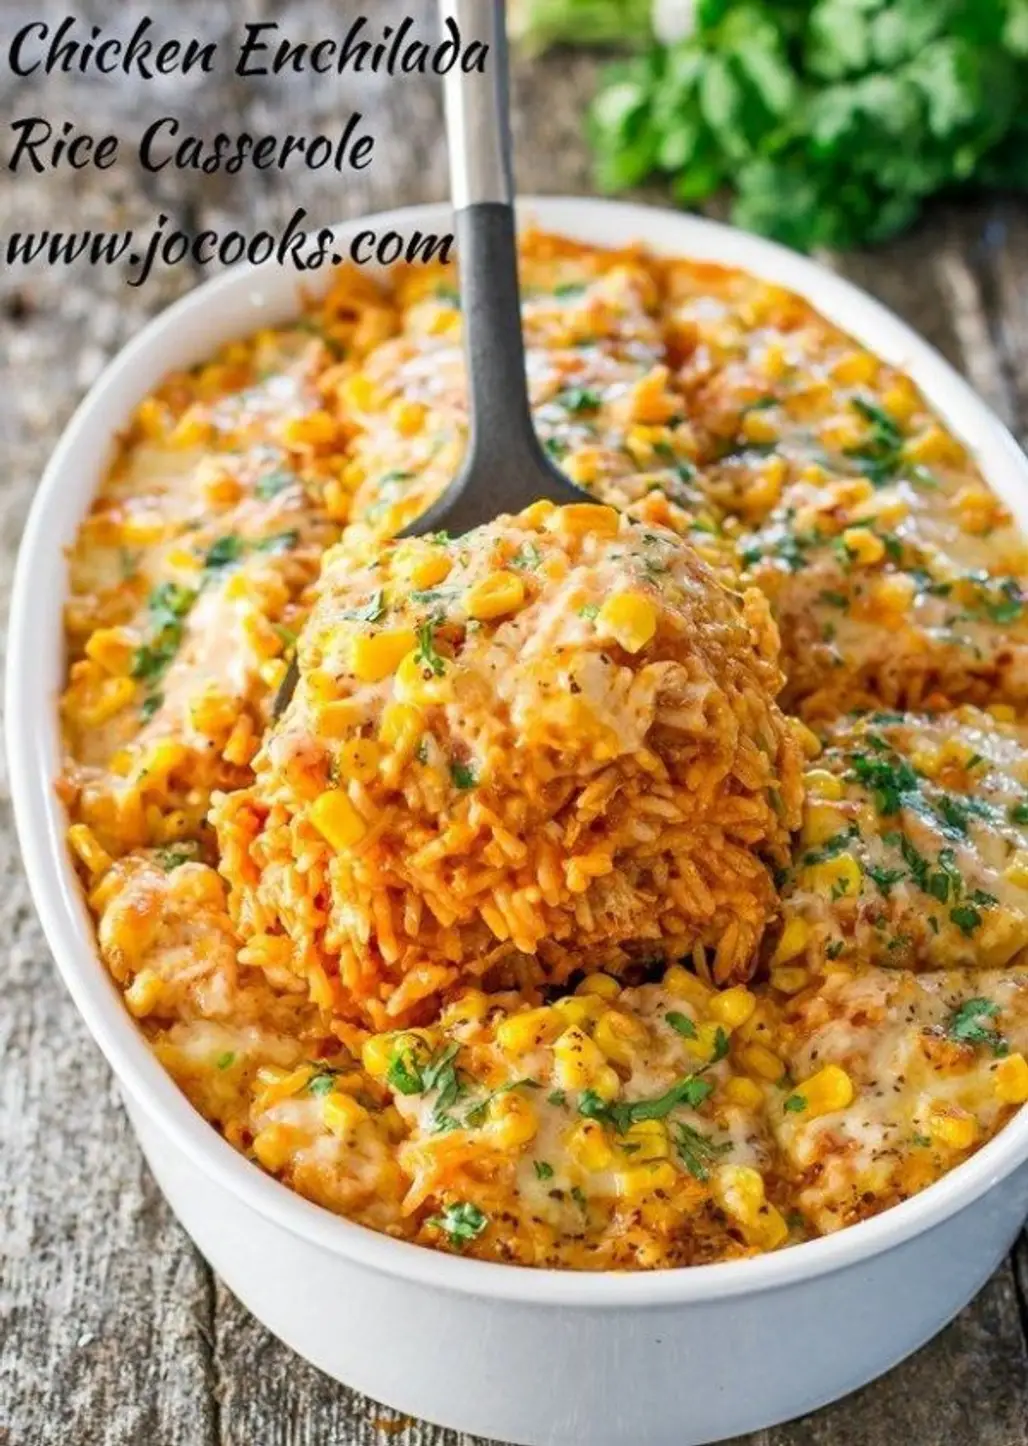 Chicken Enchilada Rice Casserole